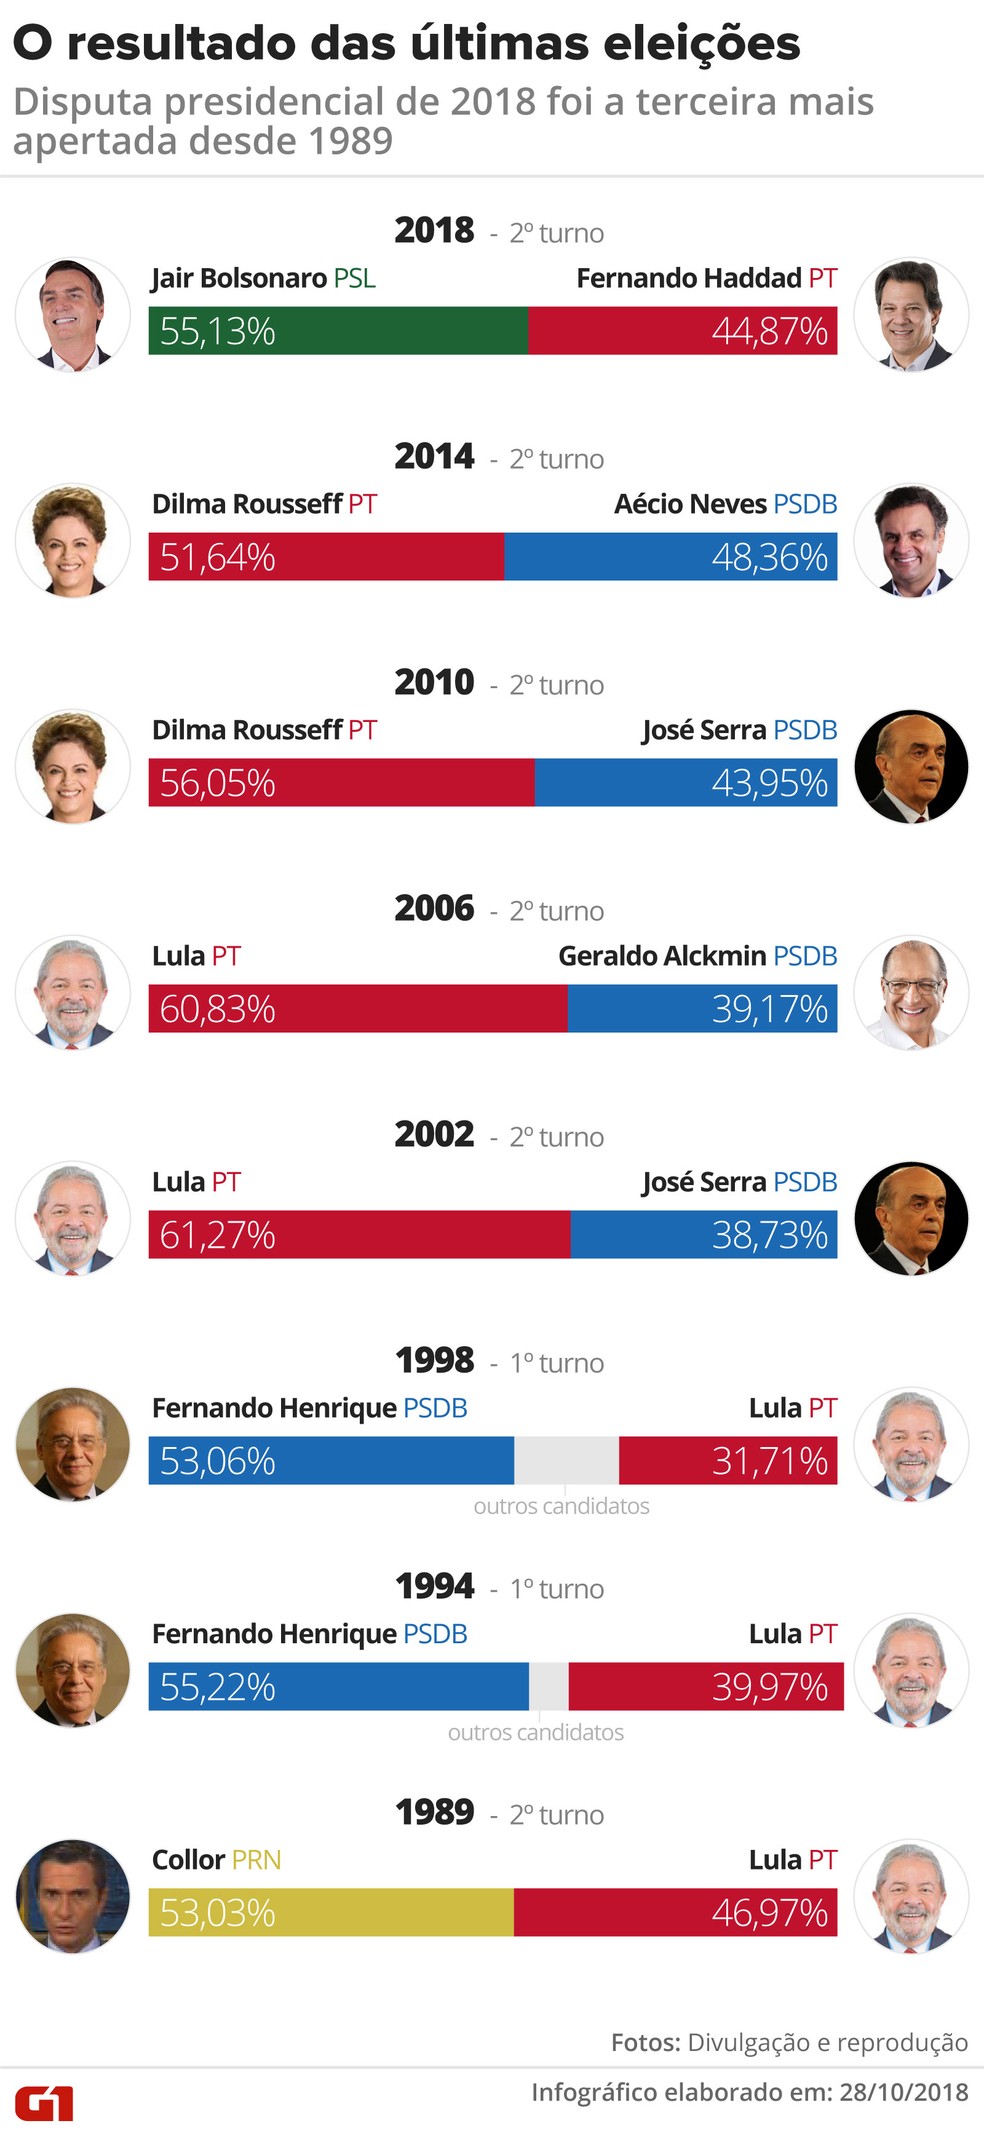 Disputa presidencial de 2018 foi a terceira mais apertada desde 1989 â€” Foto: Alexandre Mauro/G1